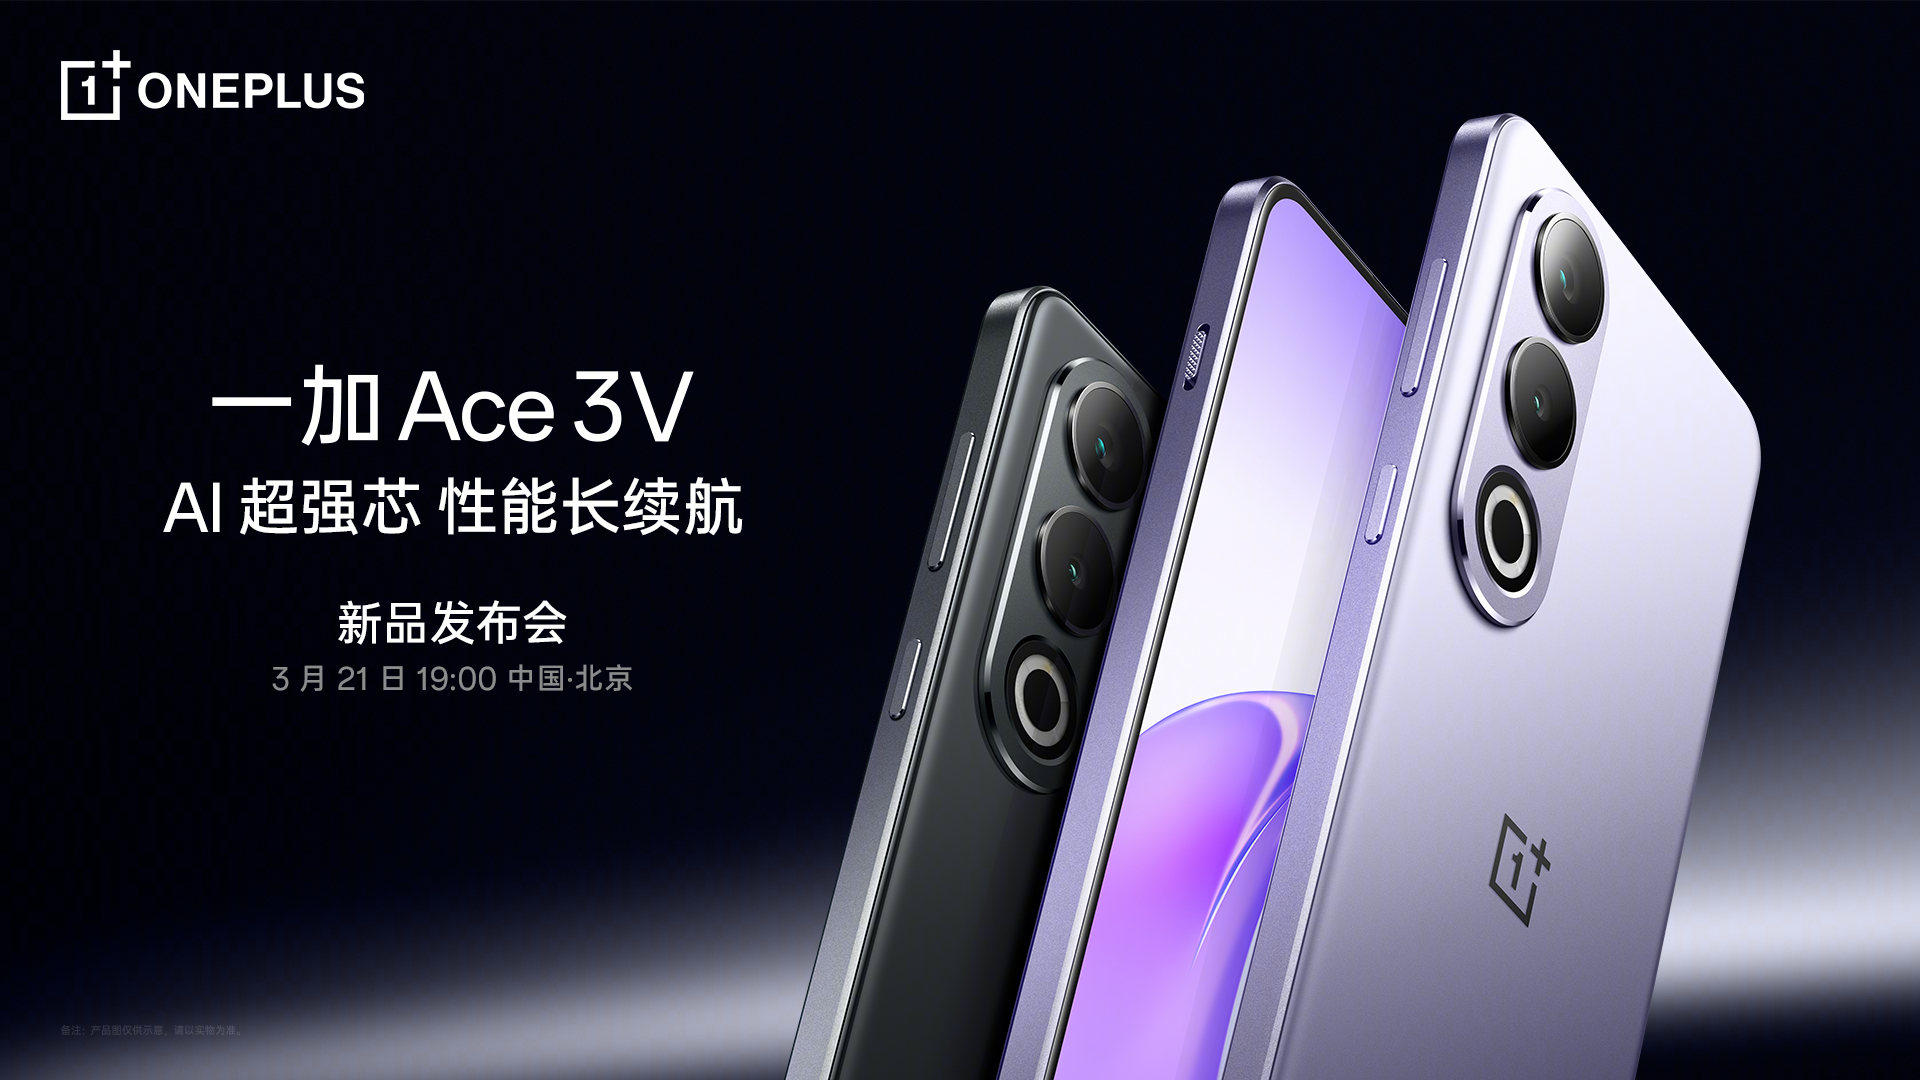 Le OnePlus Ace 3V, équipé d'une puce Snapdragon 7+ Gen 3 et d'une batterie de 5 500 mAh, sera lancé le 21 mars.